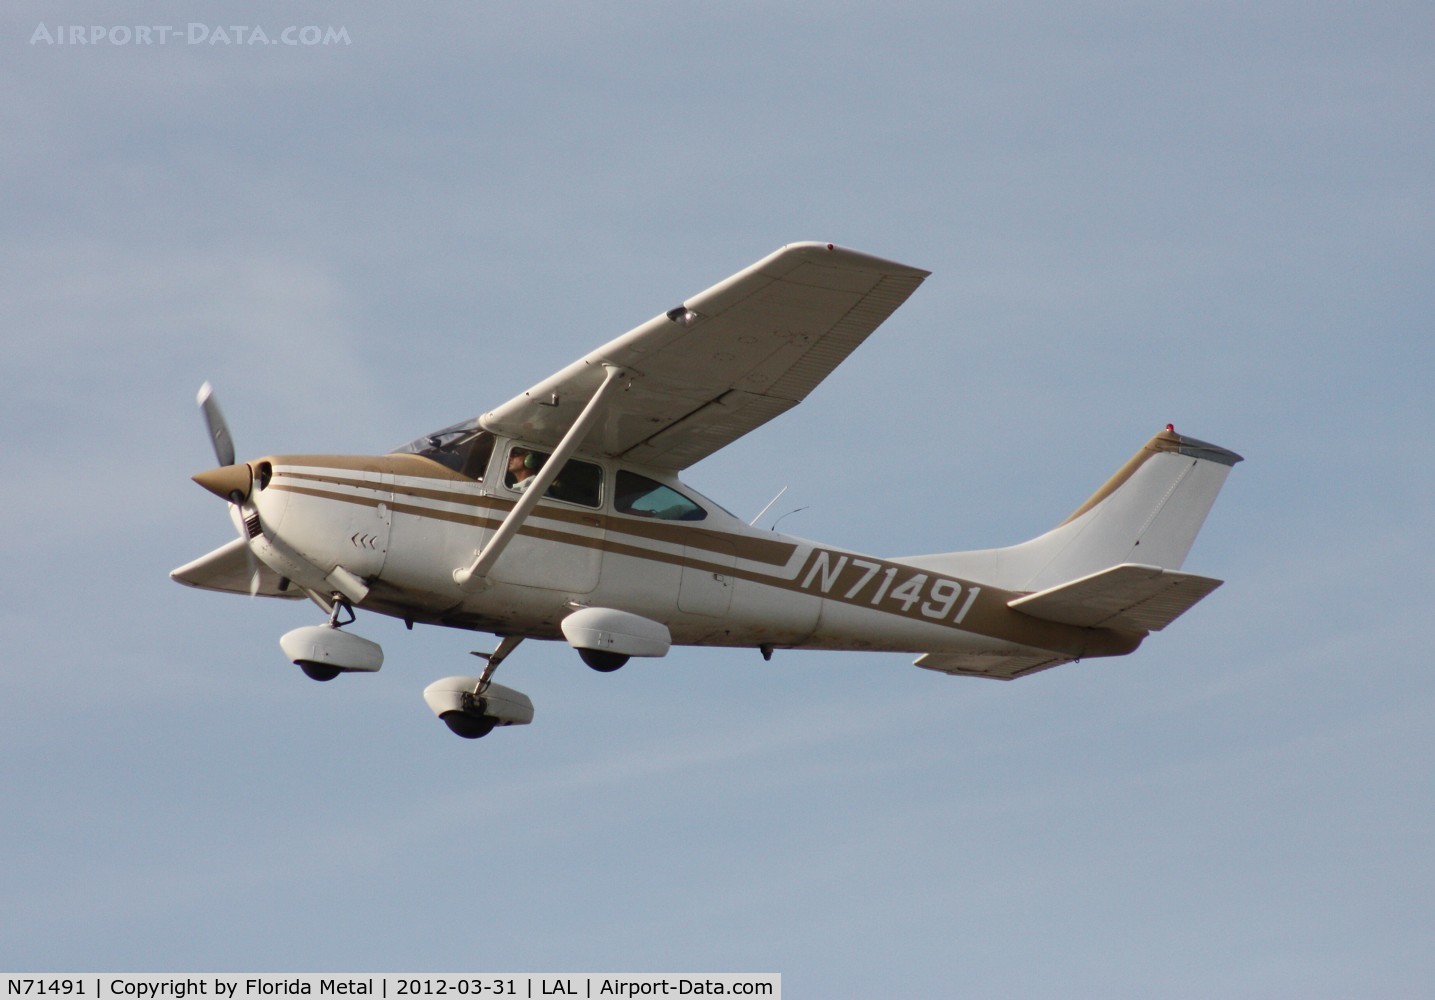 N71491, 1969 Cessna 182M Skylane C/N 18259641, Cessna 182M